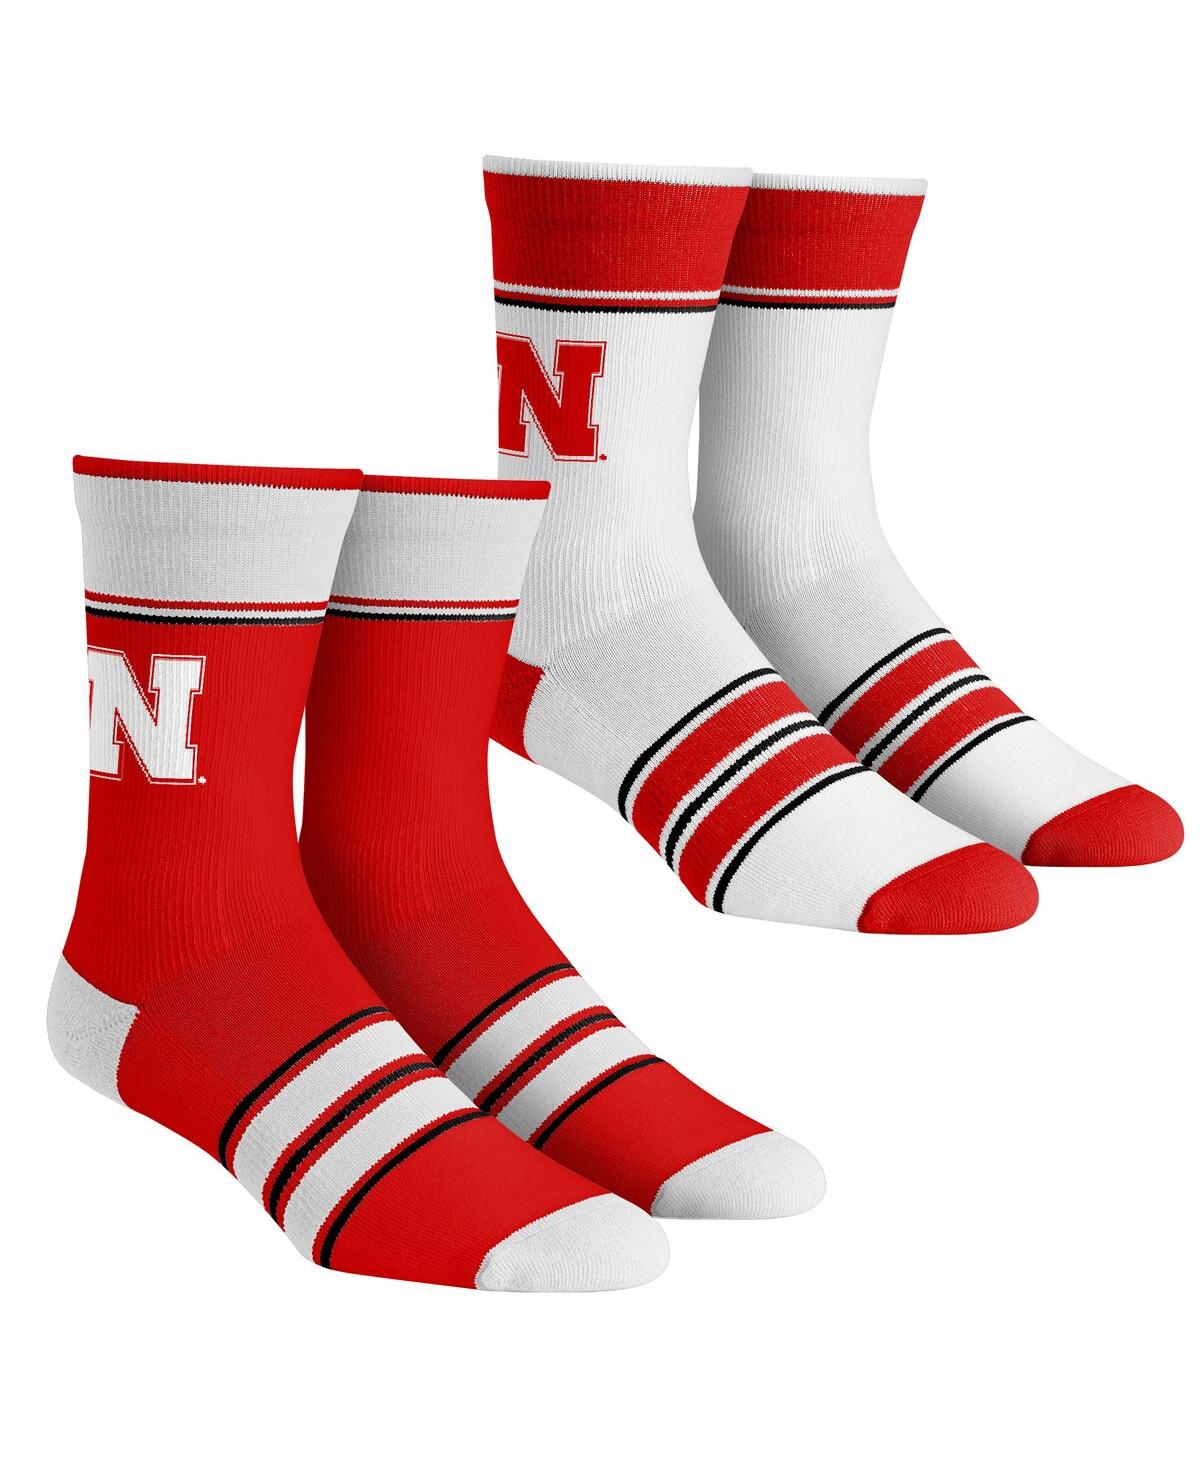 Rock 'em Kids' Youth Boys And Girls  Socks Nebraska Huskers Multi-stripe 2-pack Team Crew Sock Set In Red,white